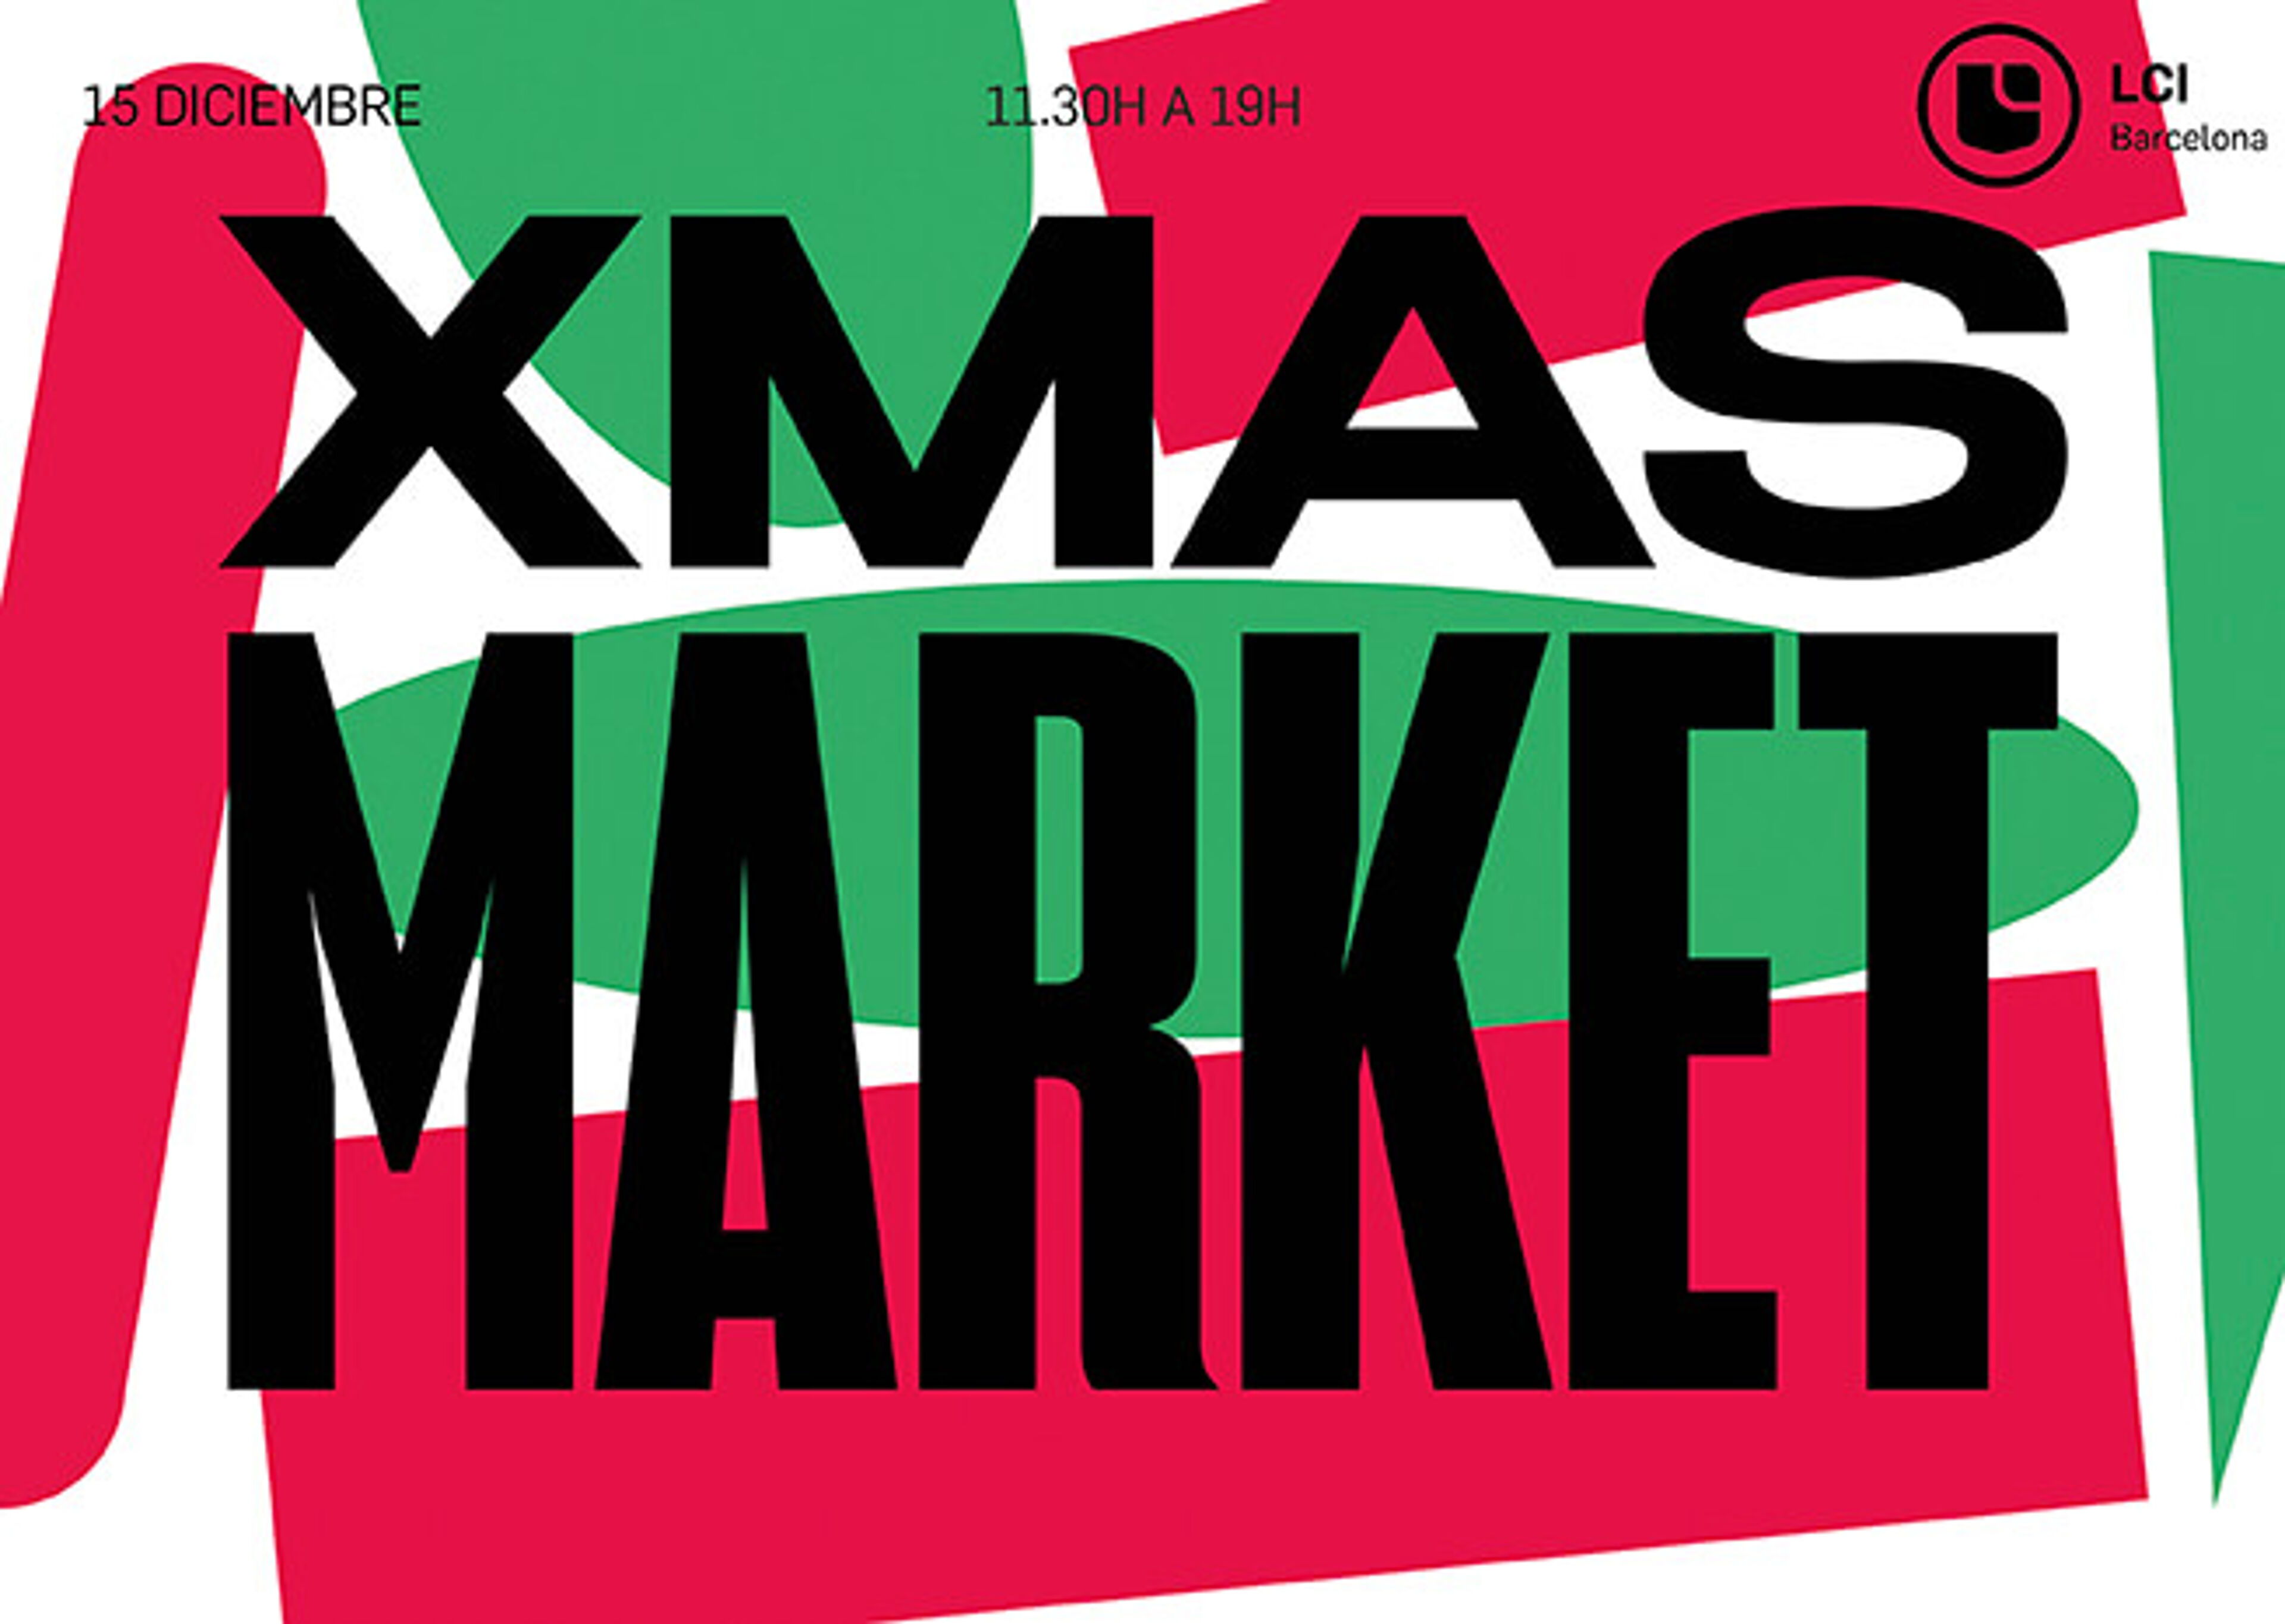 Un pòster gràfic atrevit amb 'XMAS MARKET' en lletres de bloc vermelles i verdes, anunciant un esdeveniment el 15 de desembre de 11.30h a 19h a LCI Barcelona.